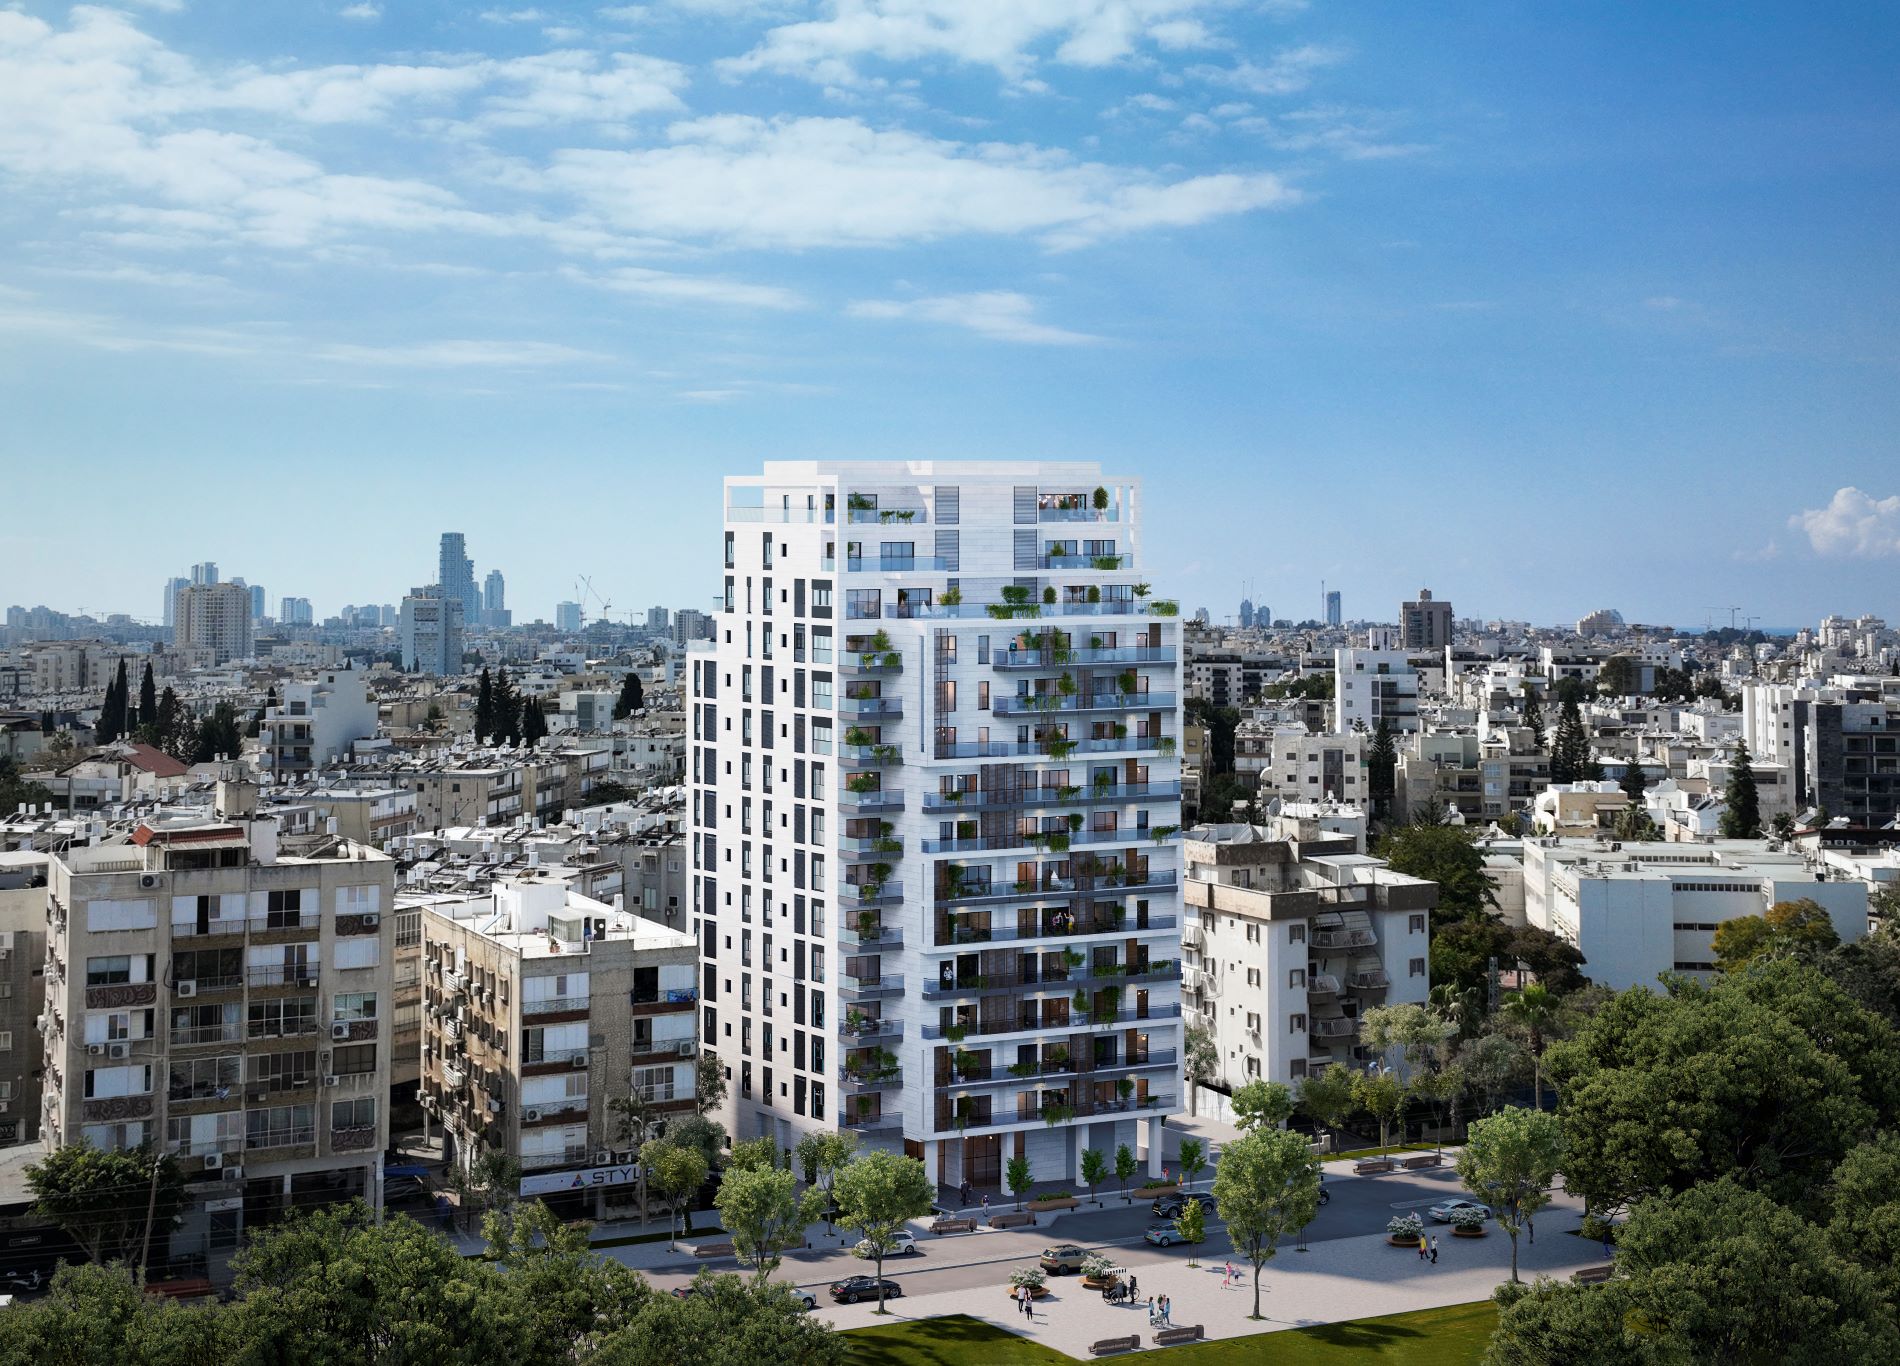 פרויקט אאורה סרלין חולון - בניין מגורים רב קומות מרובע בצע בלבן עם מרפסות גדולות ומרווחות.